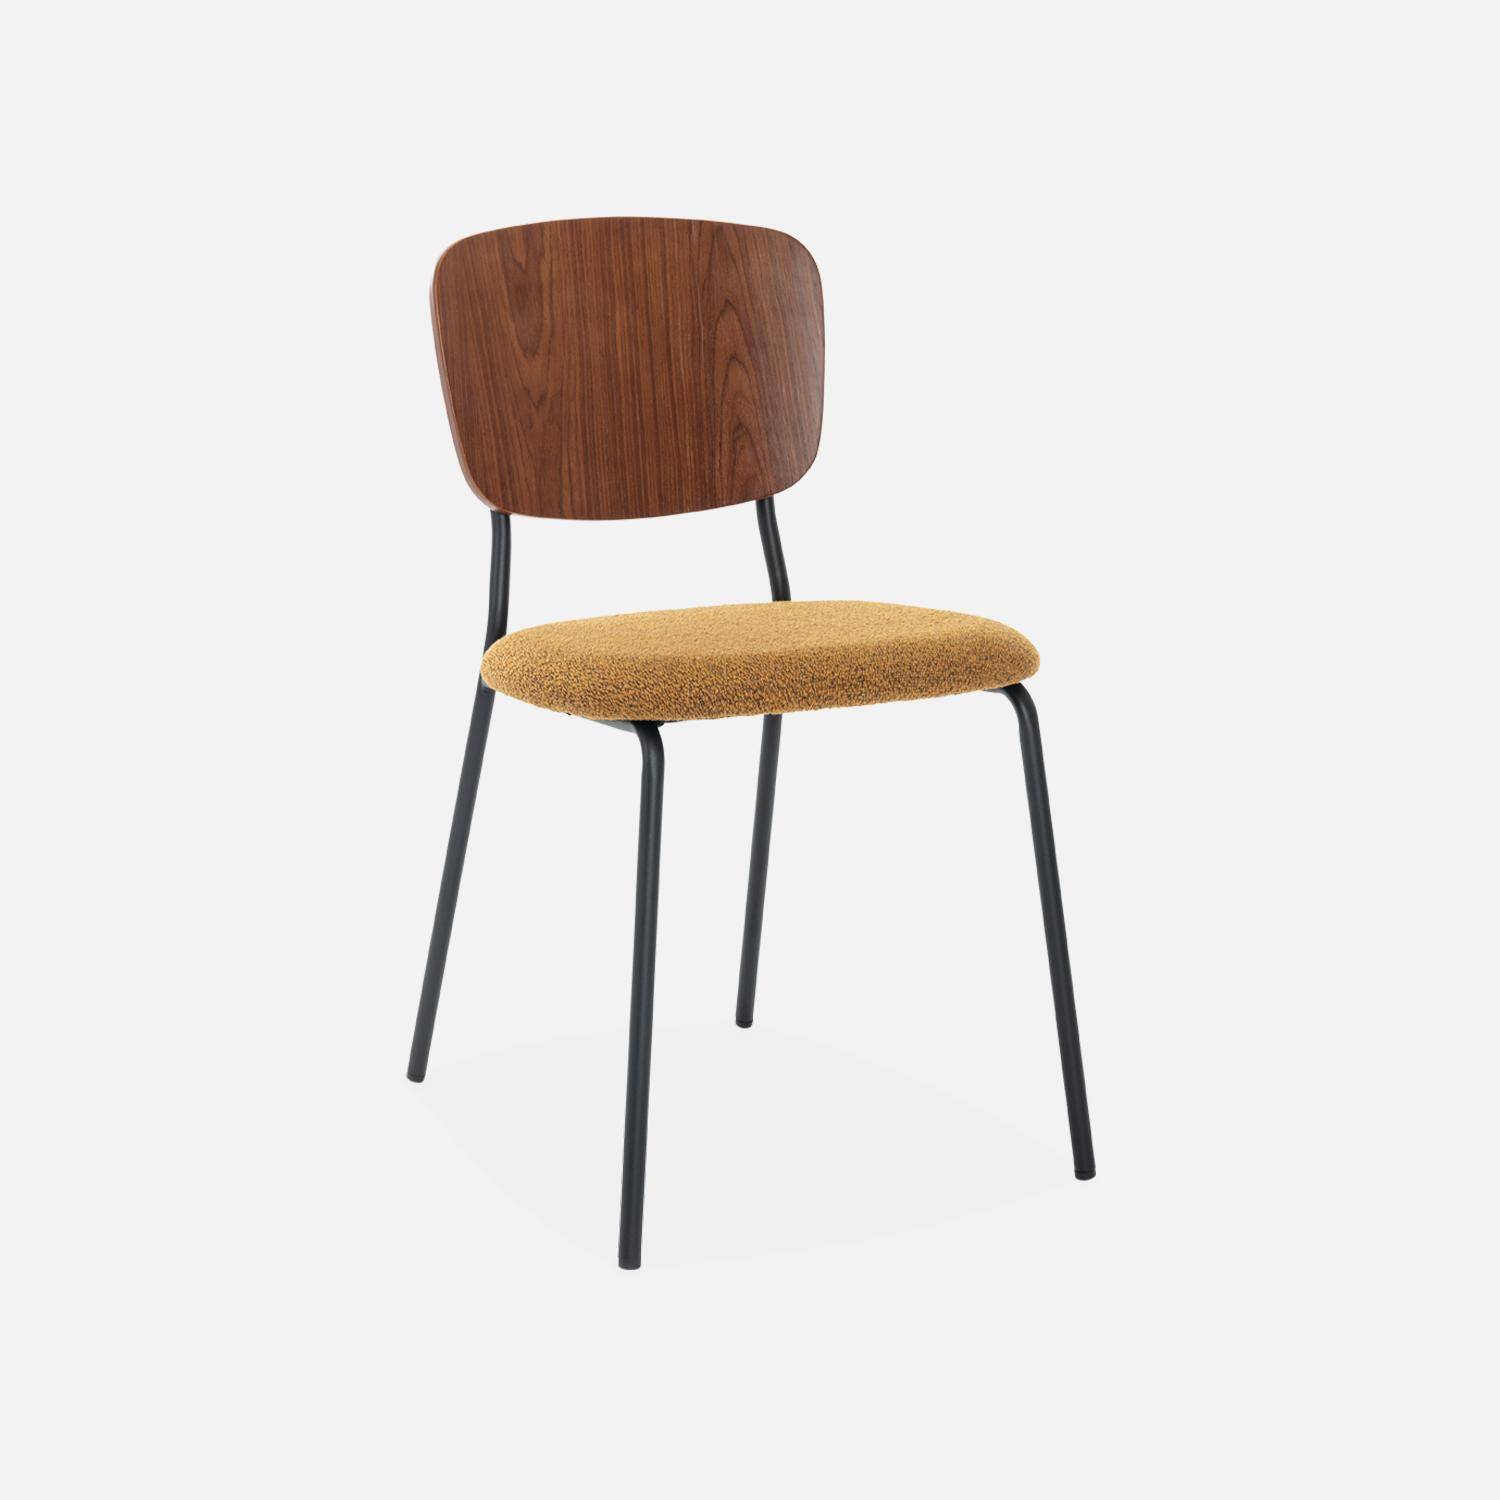 2er Set Stühle mit strukturiertem Bouclé-Sitz in senfgelb, Rückenlehne aus gebogenem Pappelholz, Beine aus mattschwarzem Metall Photo4